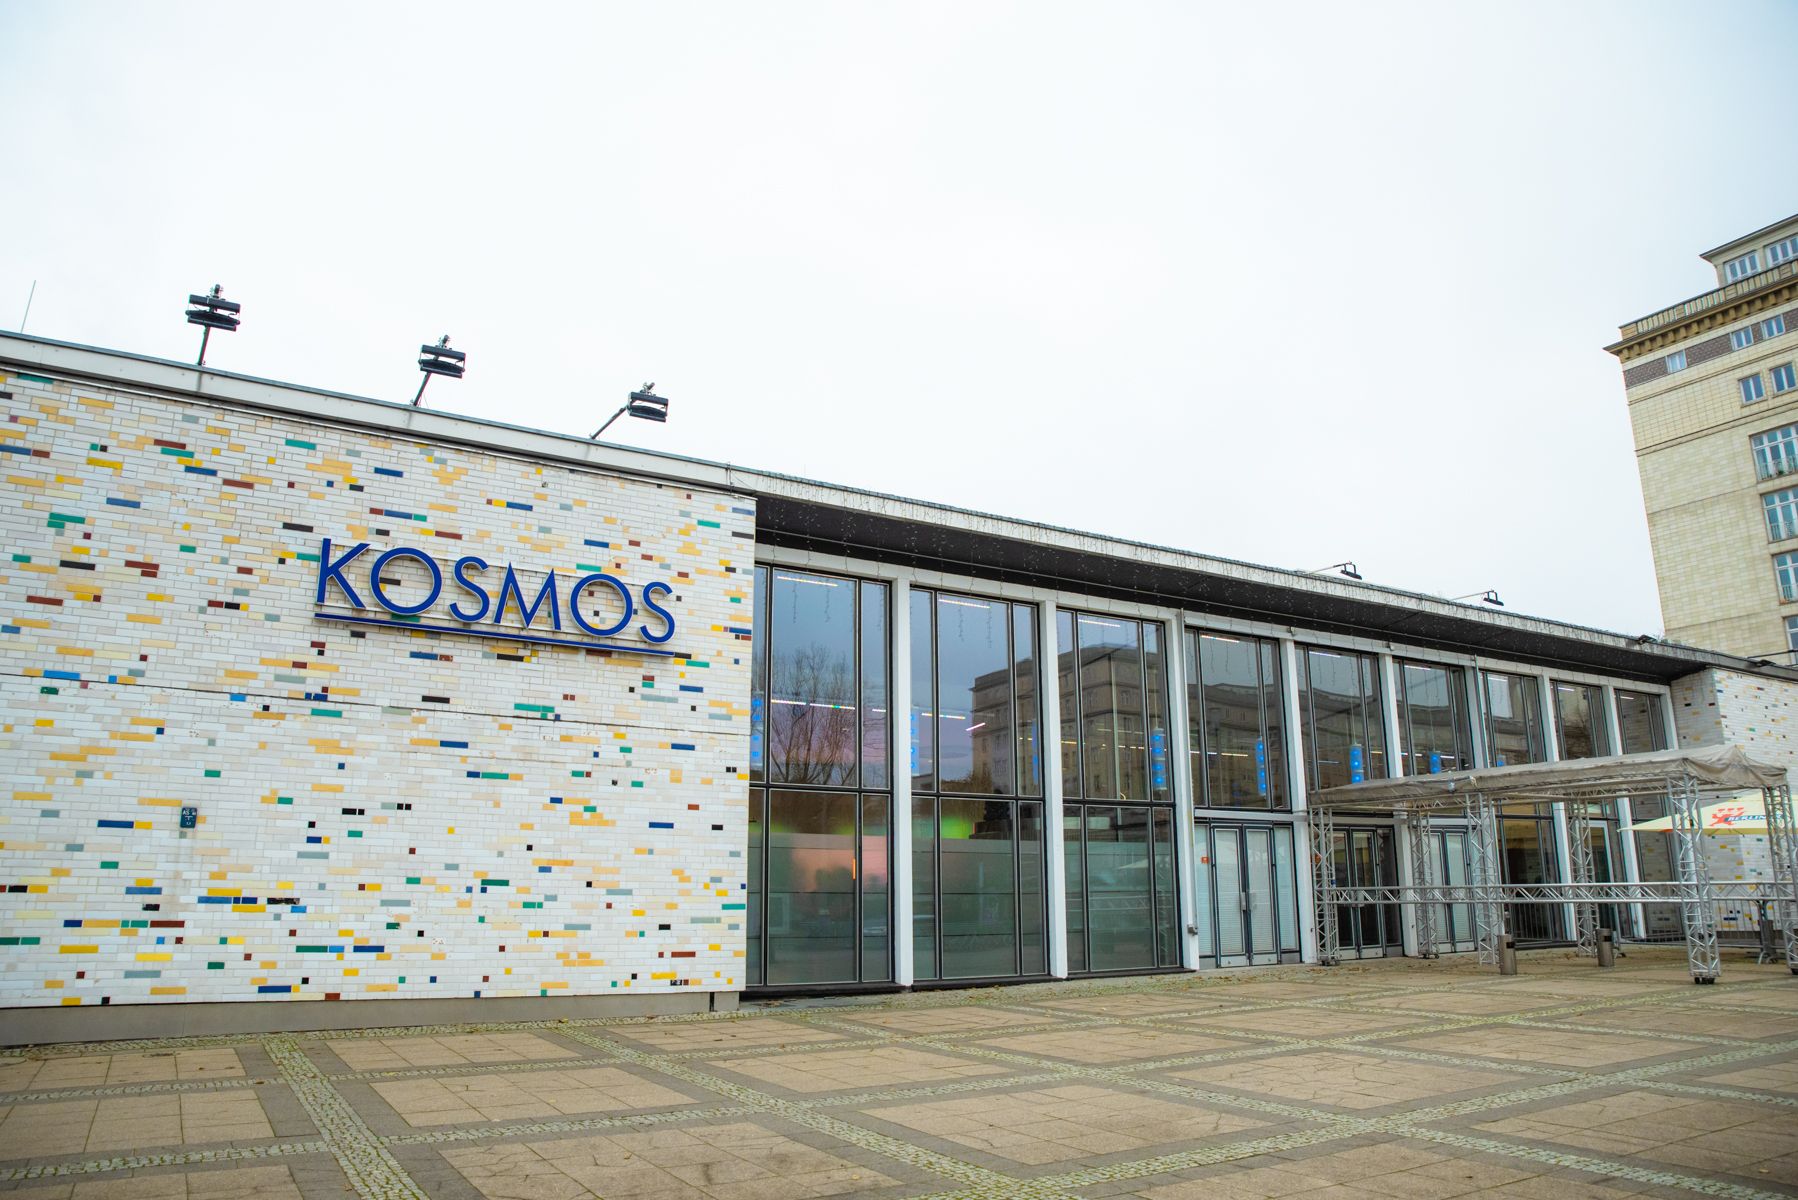 Kosmos place